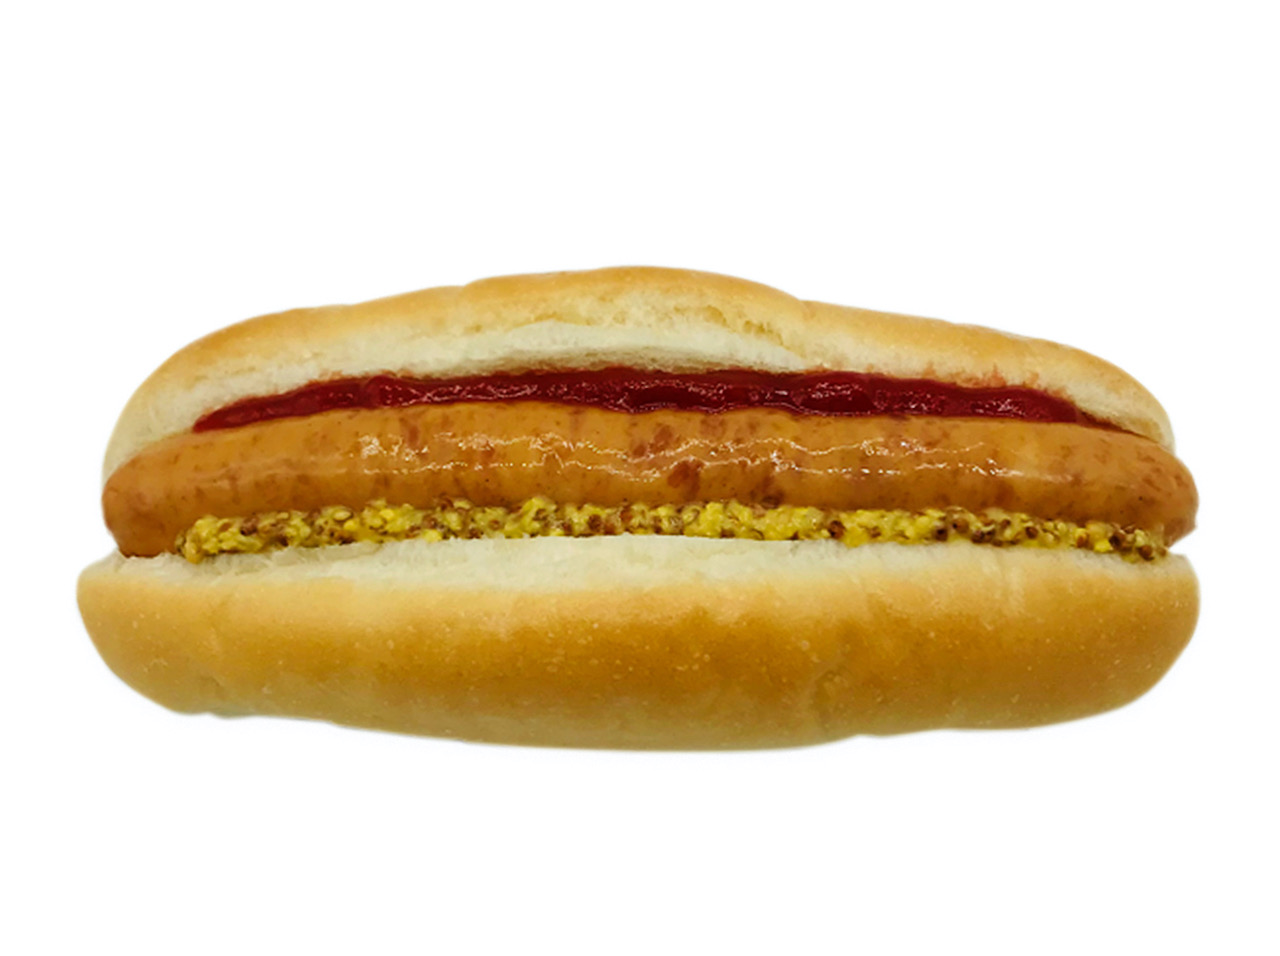 人気のソーセージ「シャウエッセン」を挟んだホットドッグです。味付けはシンプルにケチャップとマスタードを使用しました。